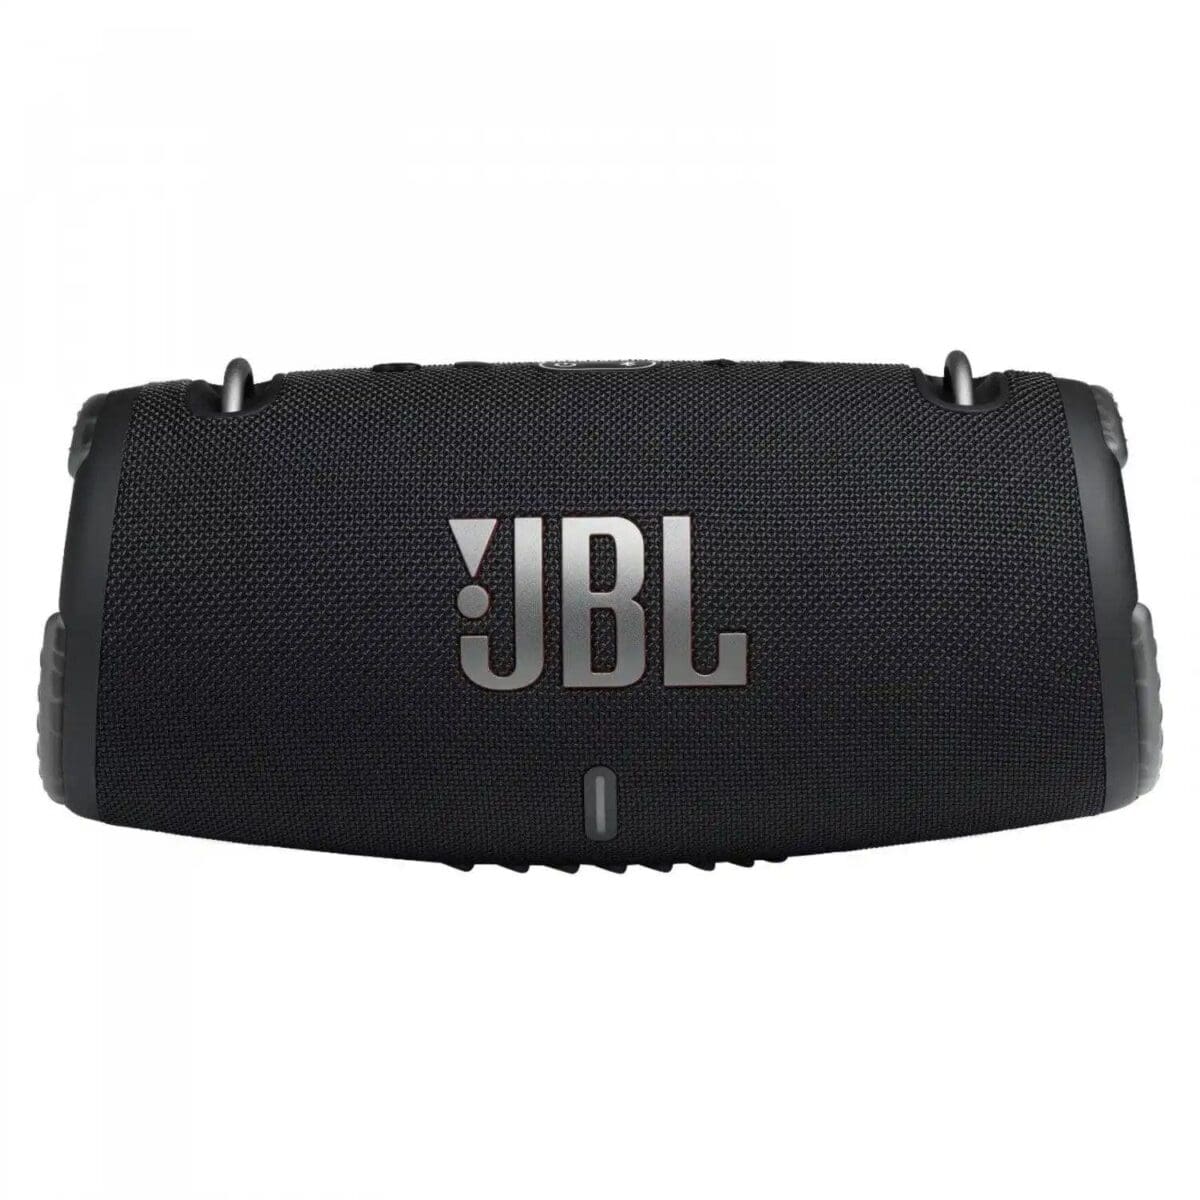 JBL XTREME 3 Portable Waterproof Speaker